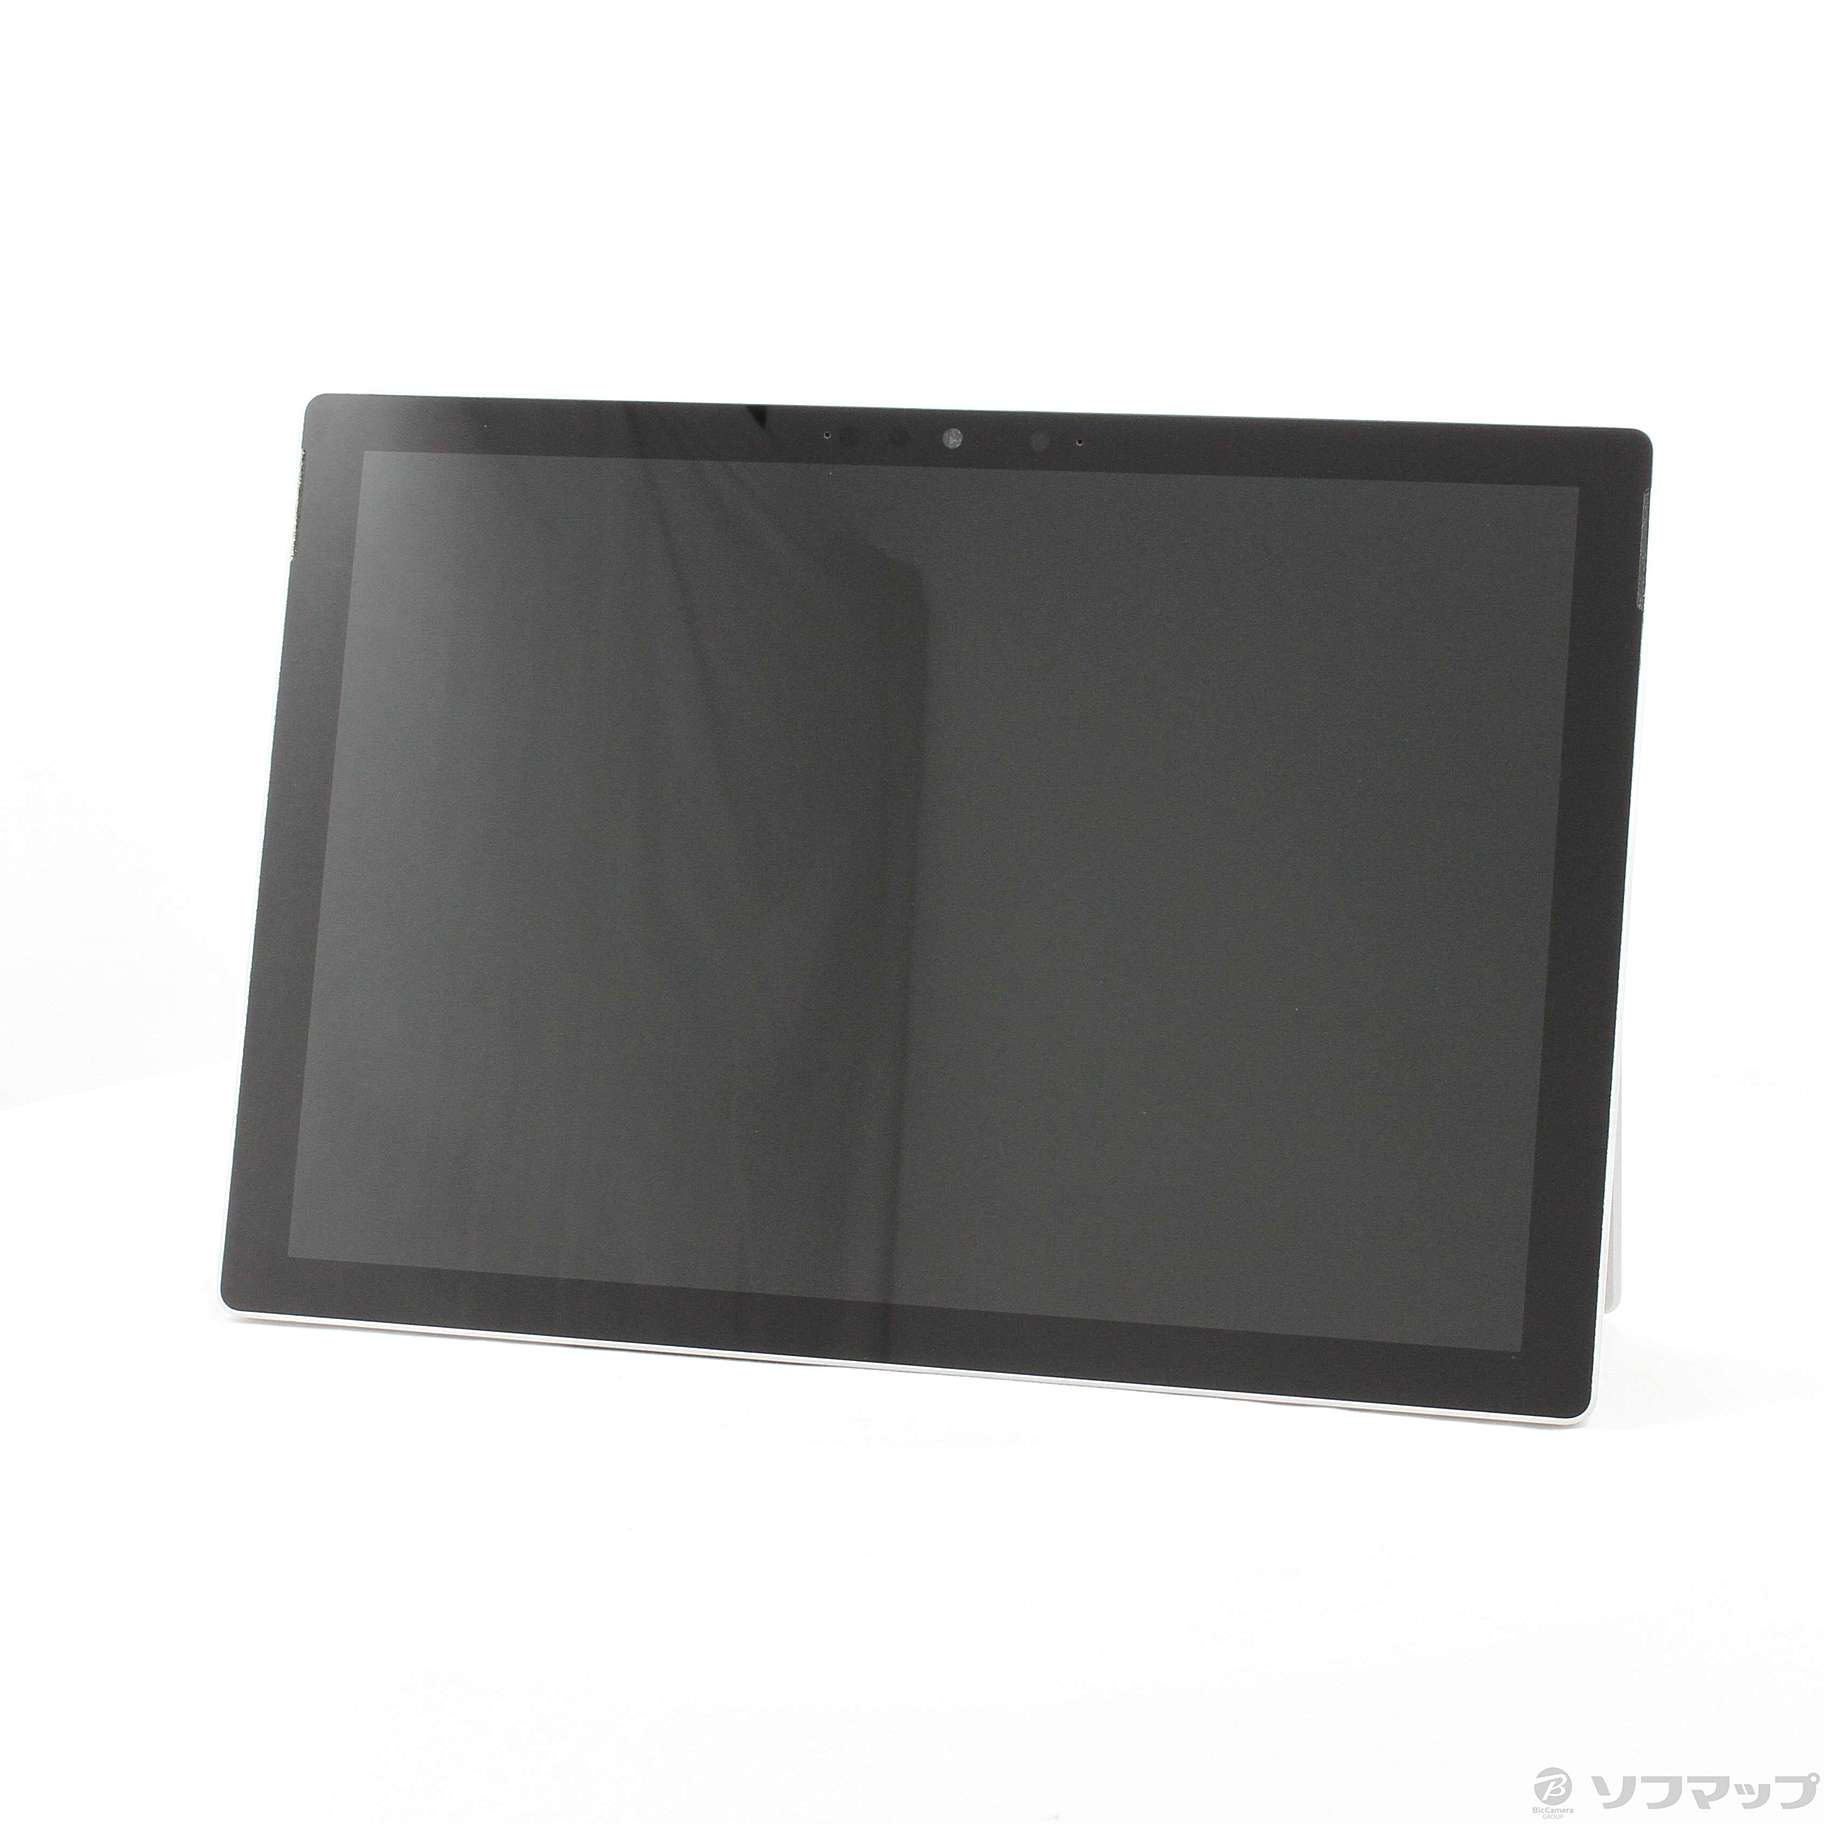 中古】Surface Pro7 〔Core i3／4GB／SSD128GB〕 VDH-00012 プラチナ